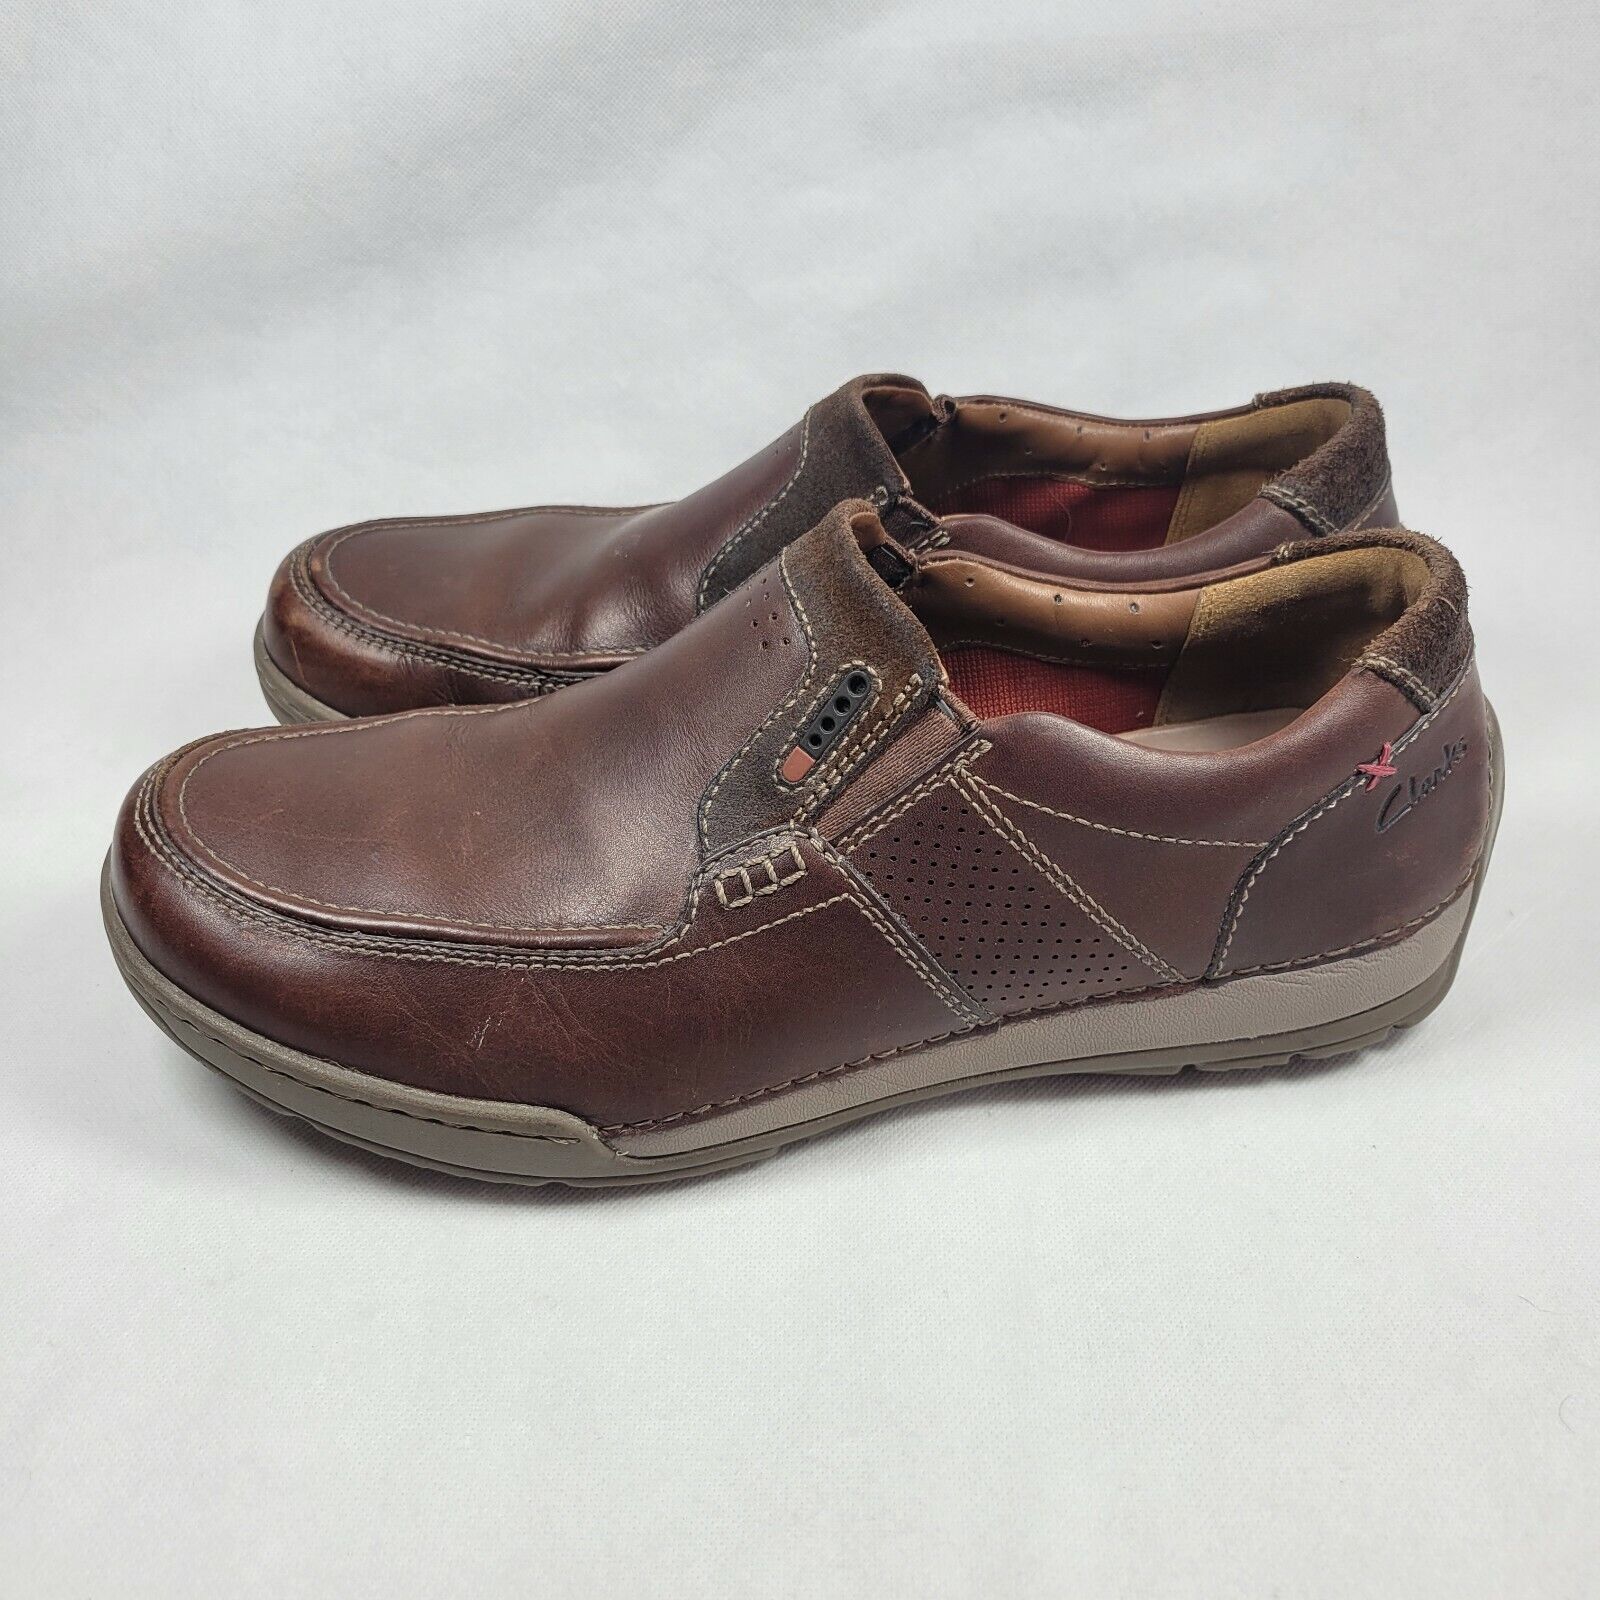 venlige Smitsom træfning Clarks ACTIVE AIR VENT Skyward Free Leather Loafers Shoe MEN 9.5 | eBay